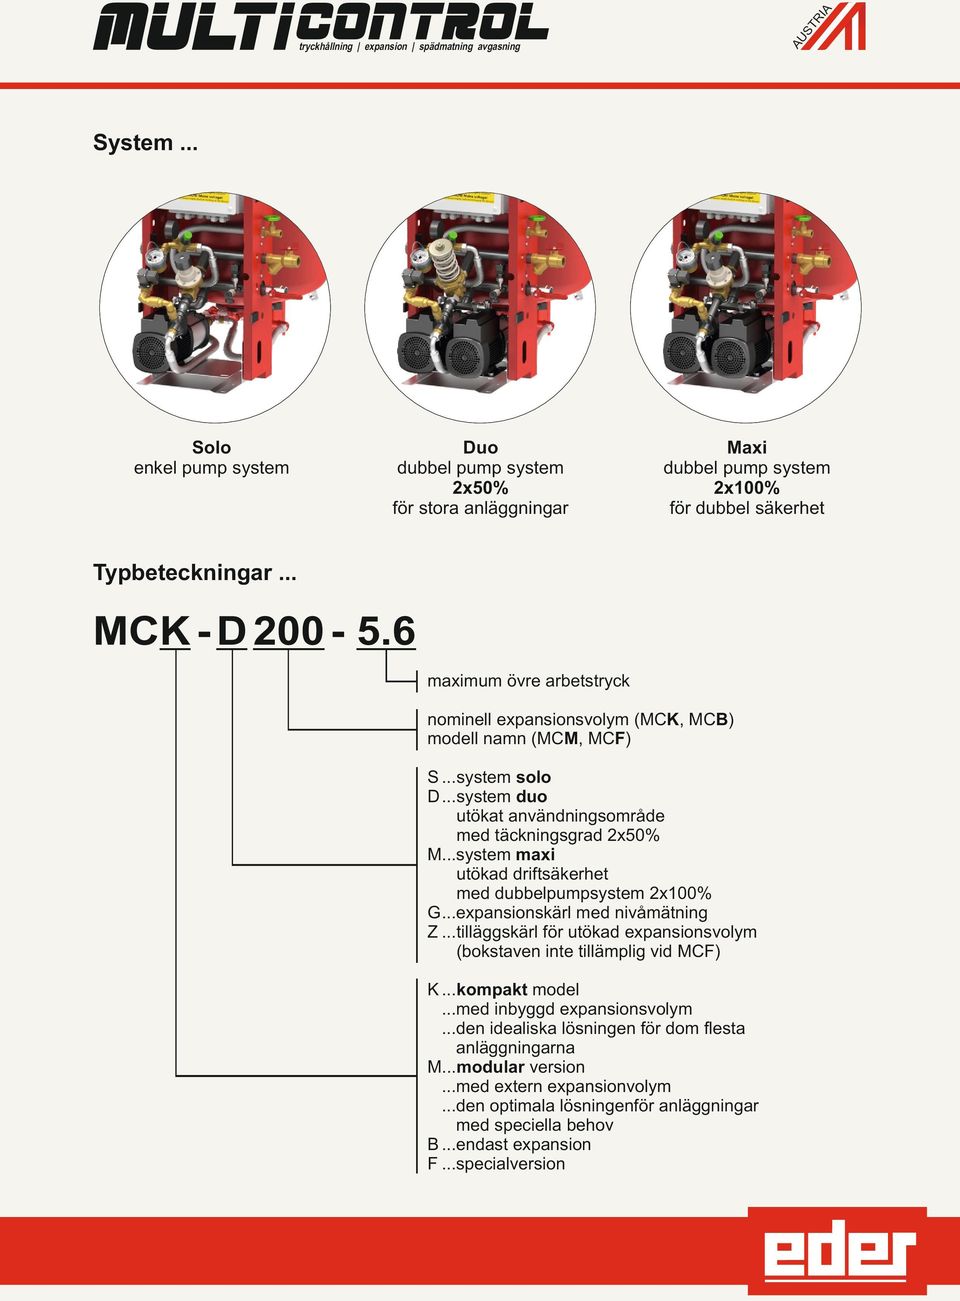 6 maximum övre arbetstryck nominell expansionsvolym (MCK, MCB) modell namn (MCM, MCF) S...system solo D...system duo utökat användningsområde med täckningsgrad 2x50% M.